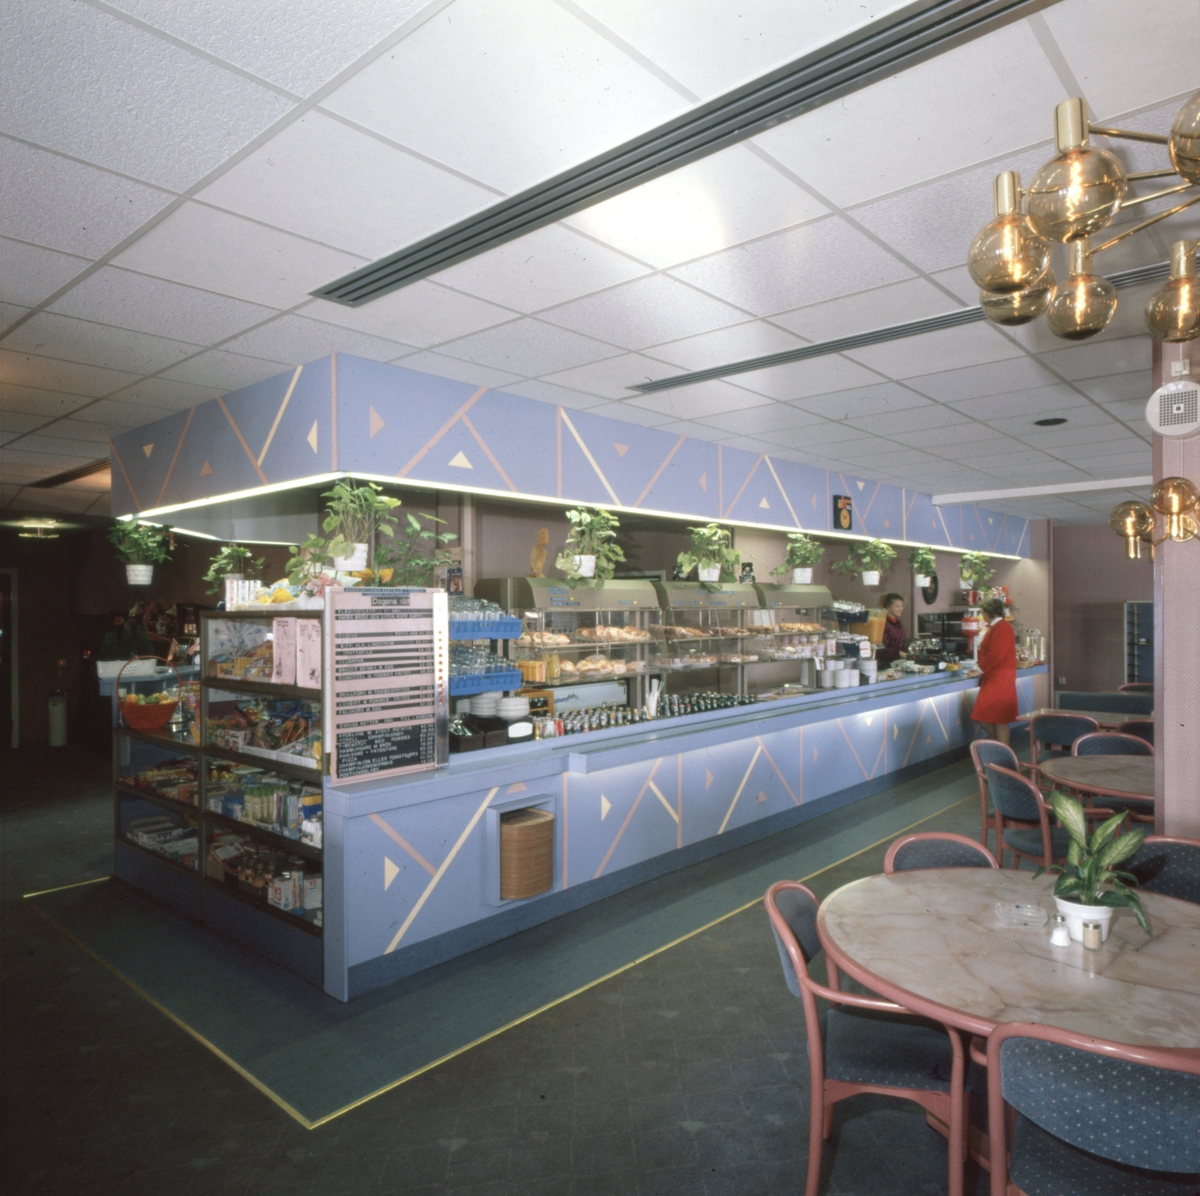 Restaurangen på Motell Filbyter på 1990-talet. Lunch. Bilder ur Motell Filbyters arkiv.